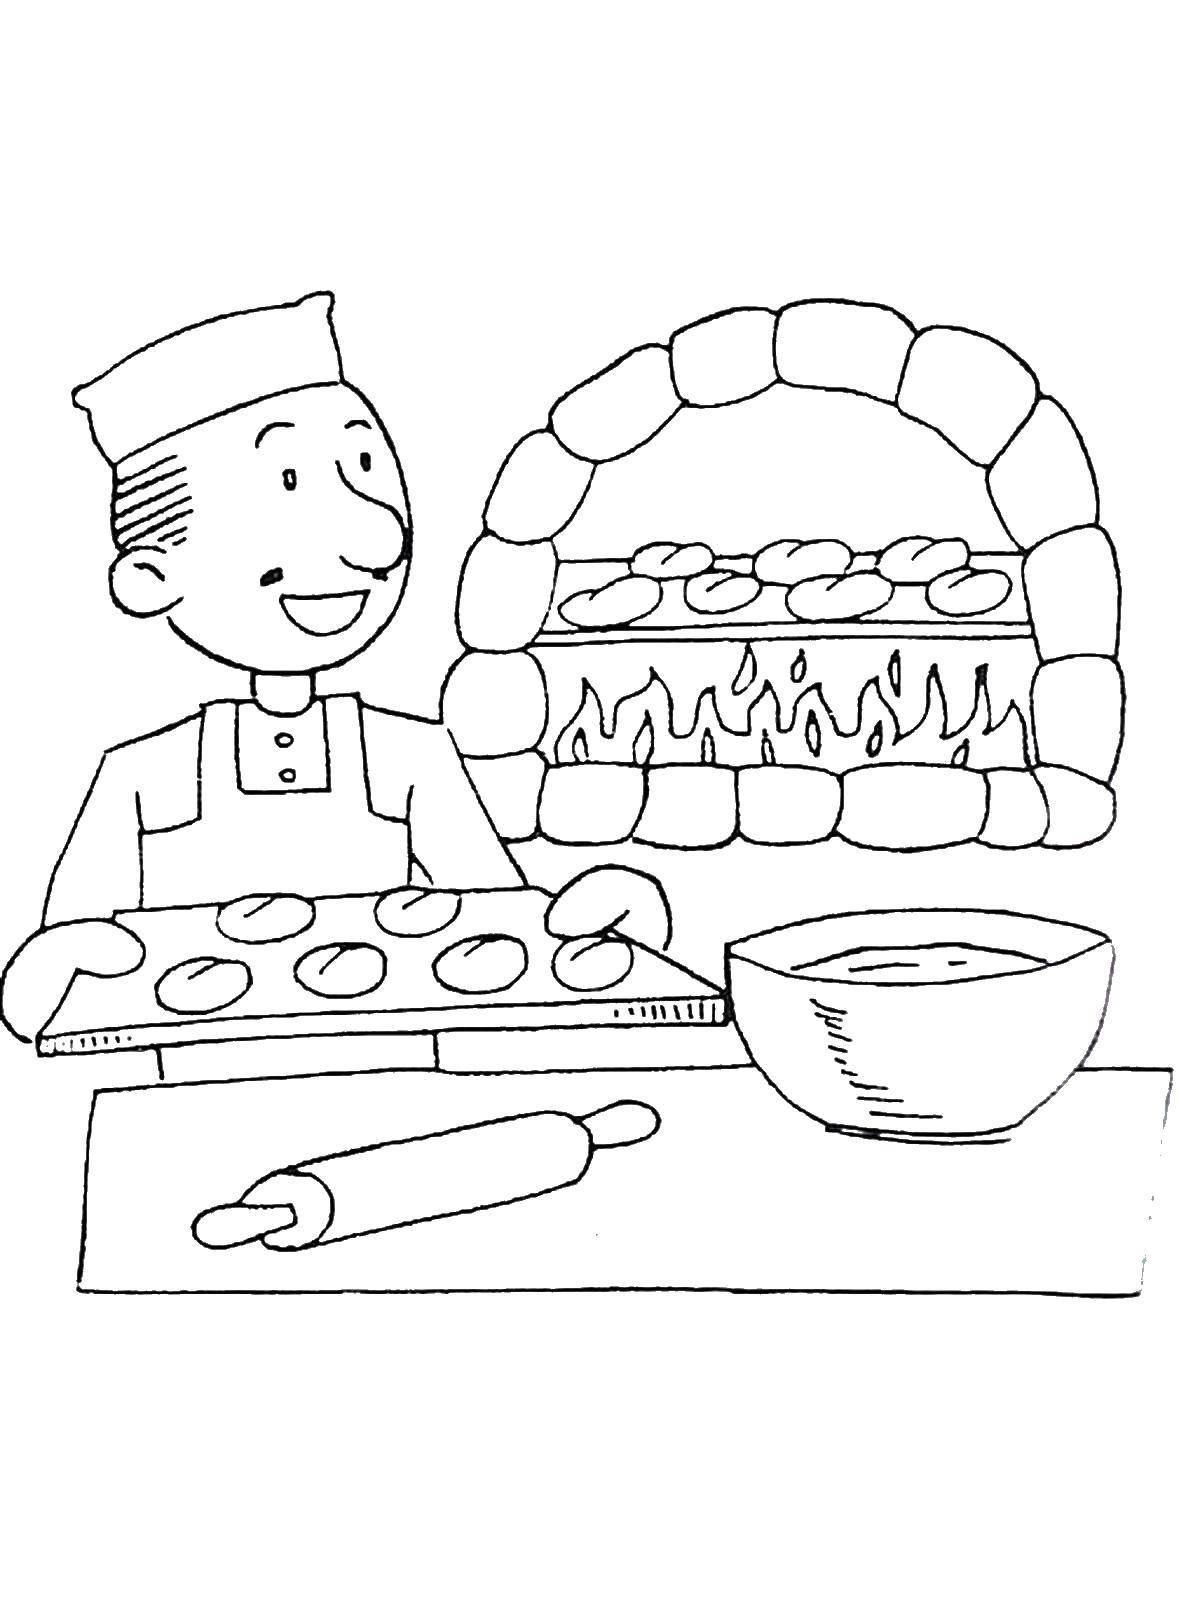 Раскраски Повар Раскраски Повар, раскраски пекарь, раскраски про тех кто готовит еду для детей